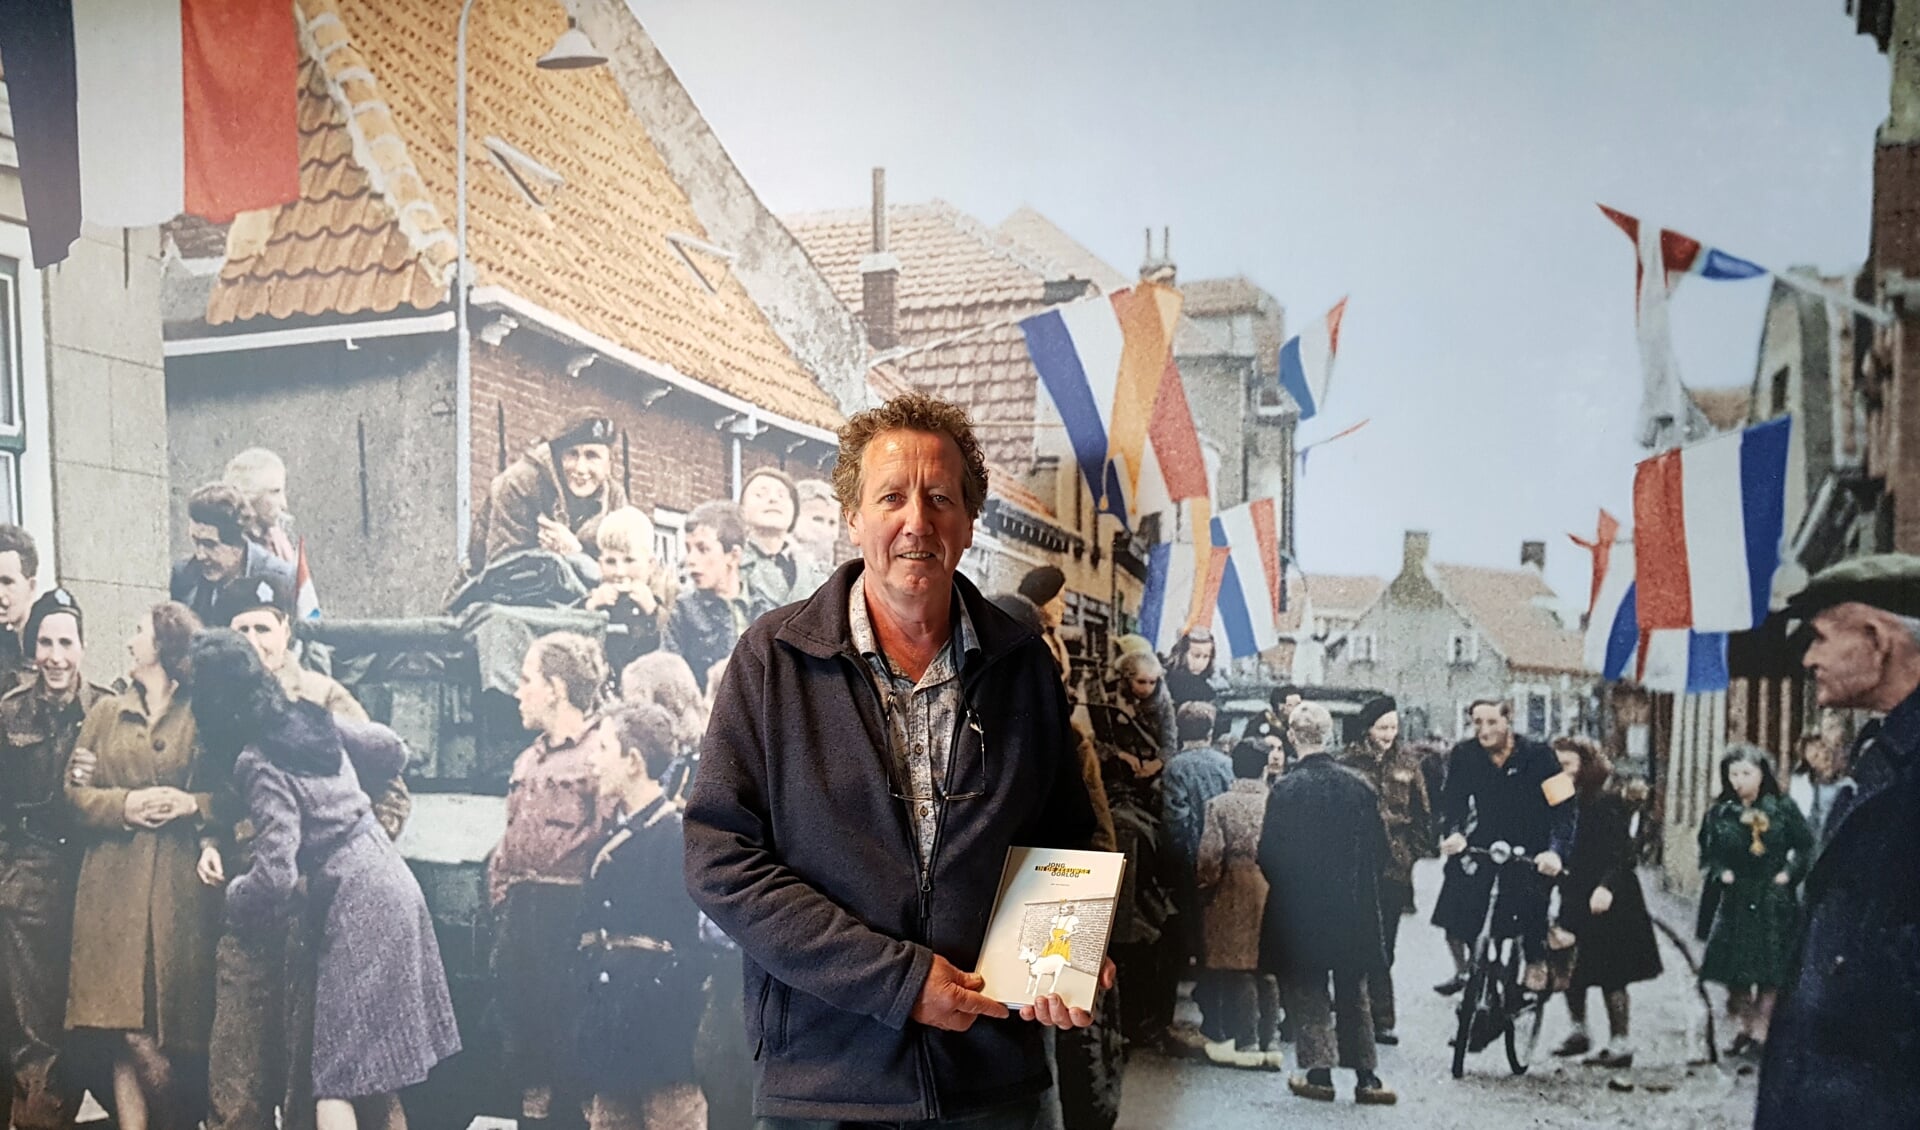 Jan van Damme, met zijn boek, voor één van de levensgrote foto's van de bevrijding in het Bevrijdingsmuseum Zeeland. FOTO EUGÈNE DE KOK 